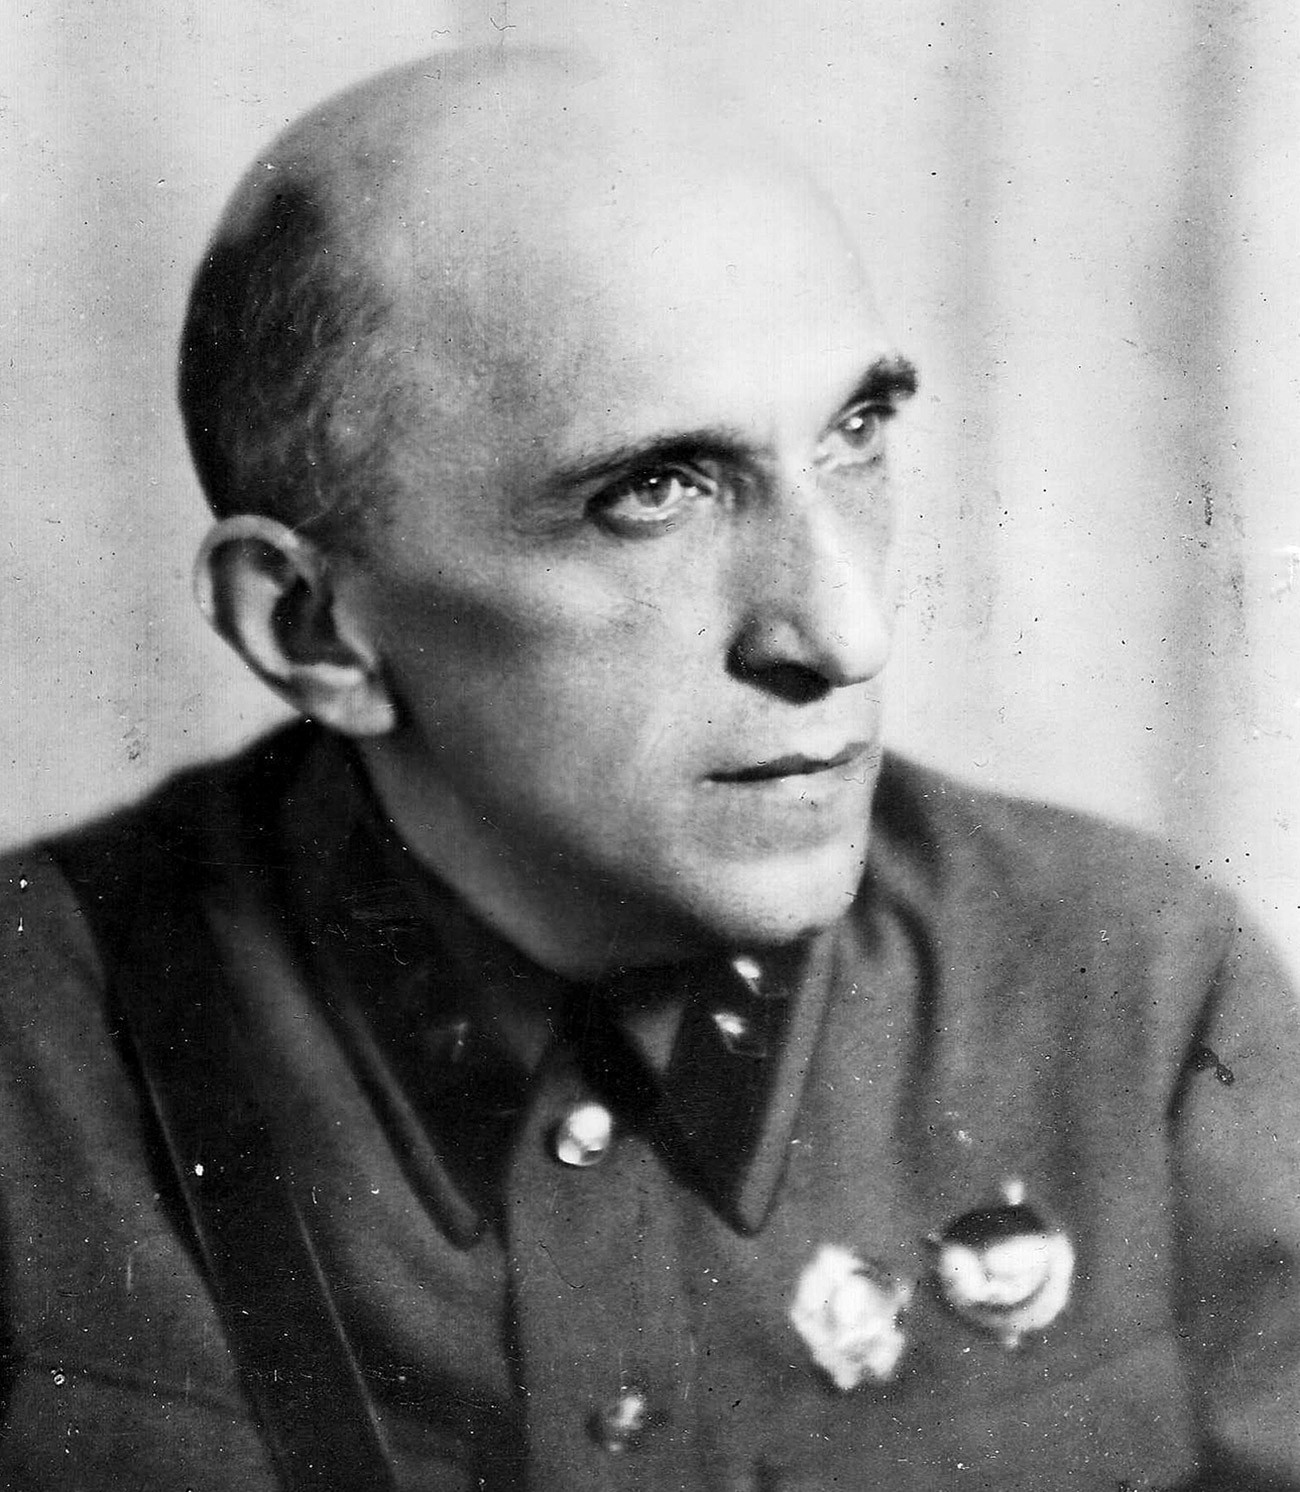 Yakov Serebryansky in 1941